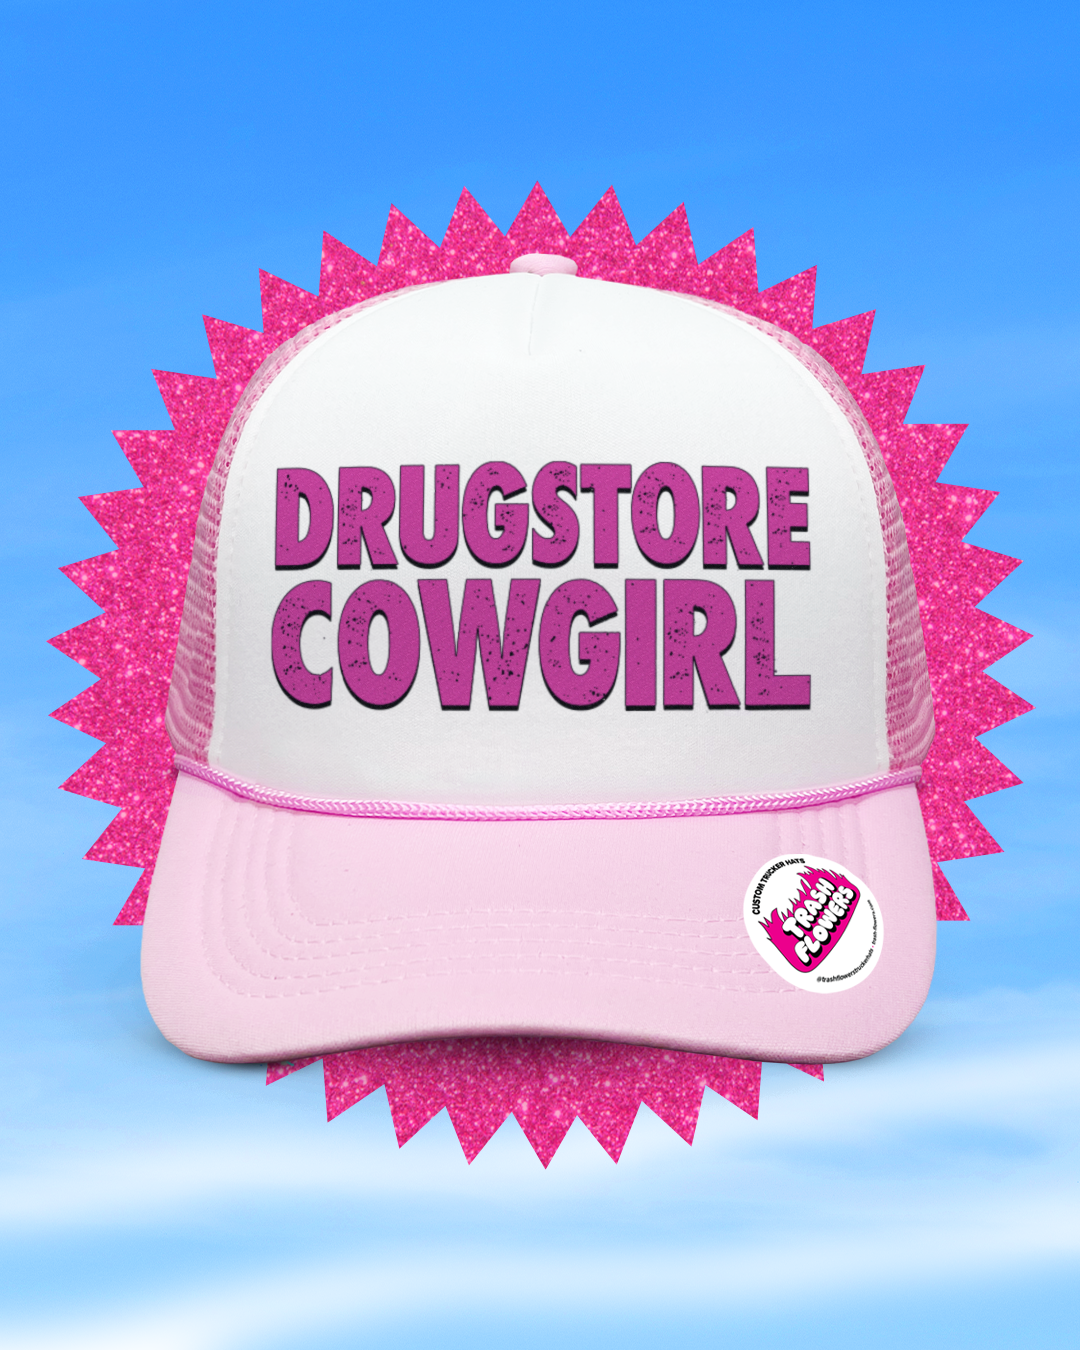 Drugstore Cowgirl Trucker Hat